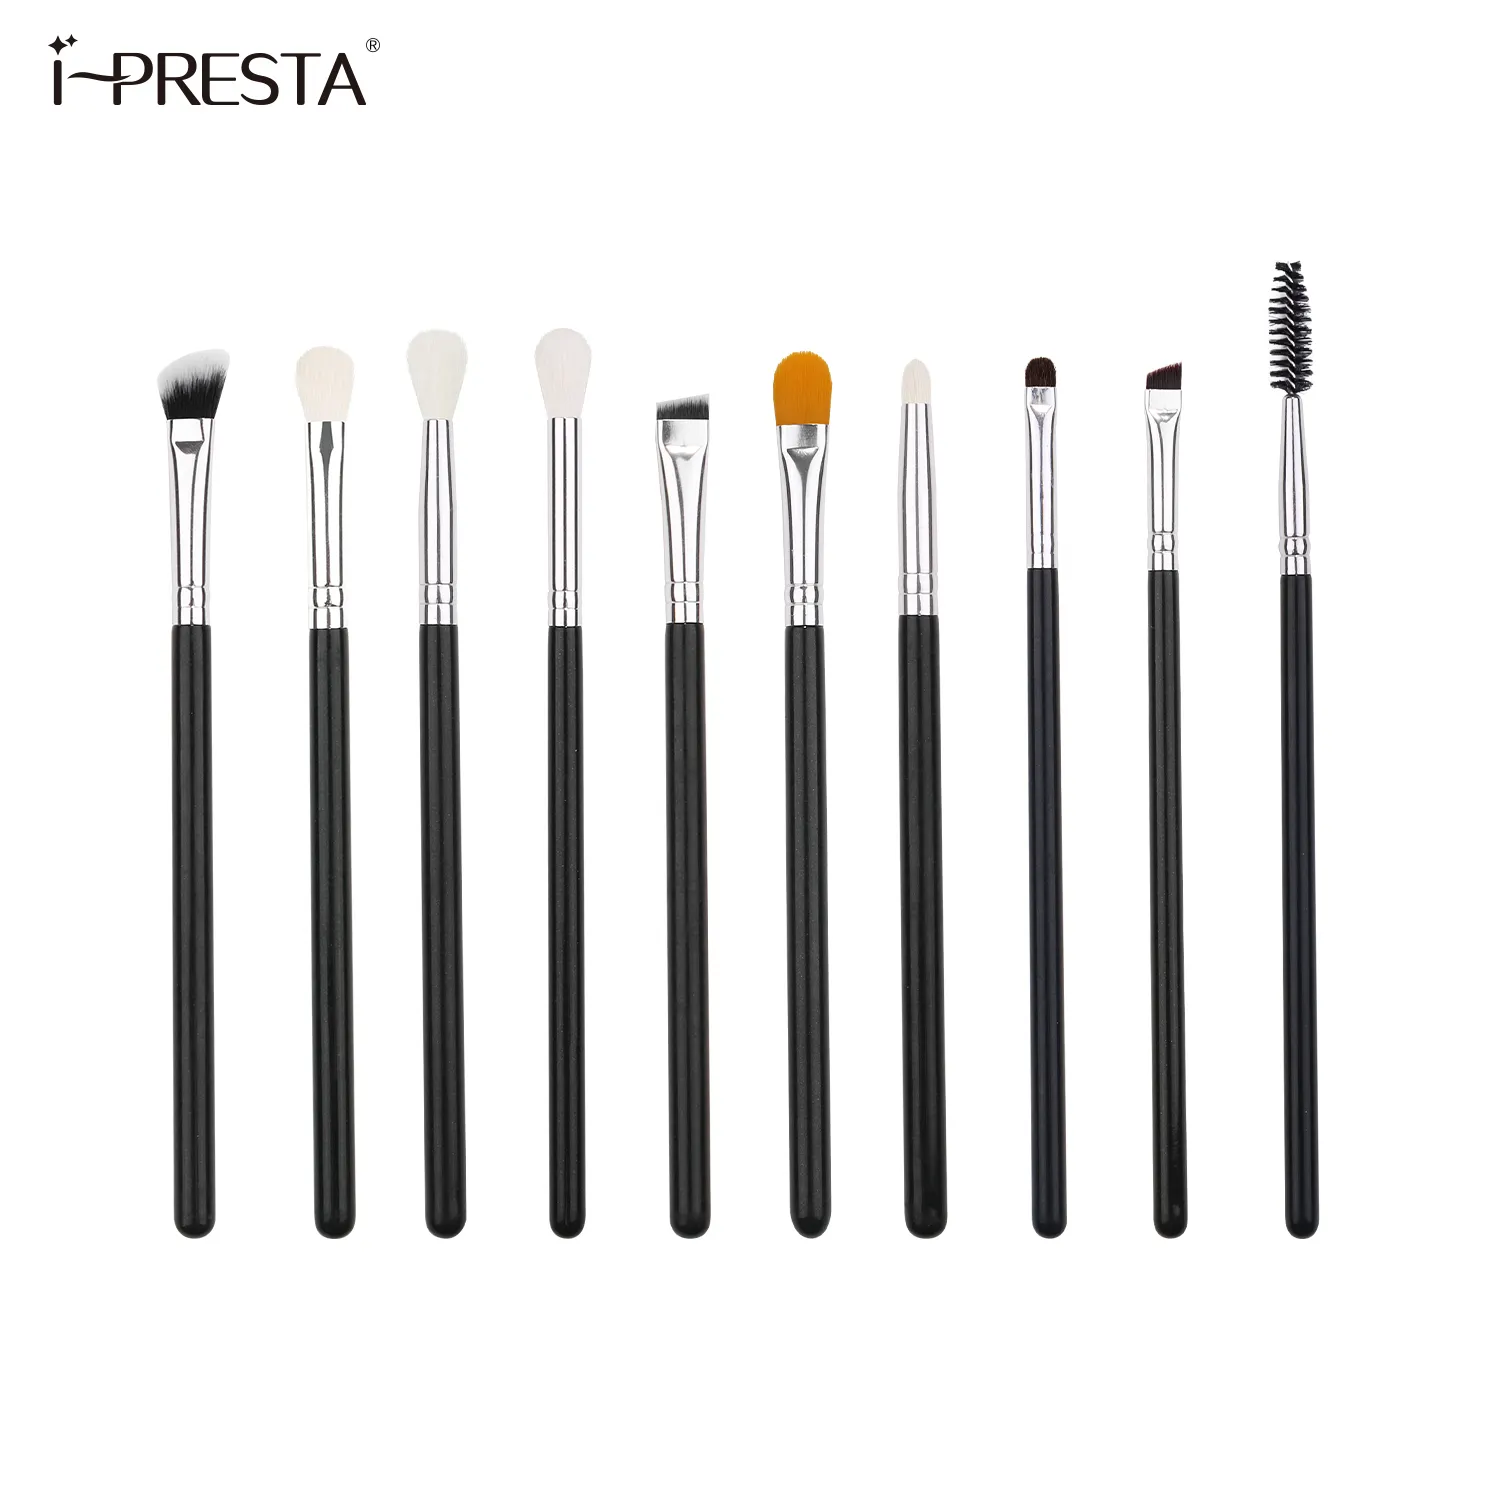 IPRESTA 10pcs Best Selling Private Label Brush Logo Eyelash Eyebrow Eyeshadow Make Up Brushes Sets Makeup Wholesale